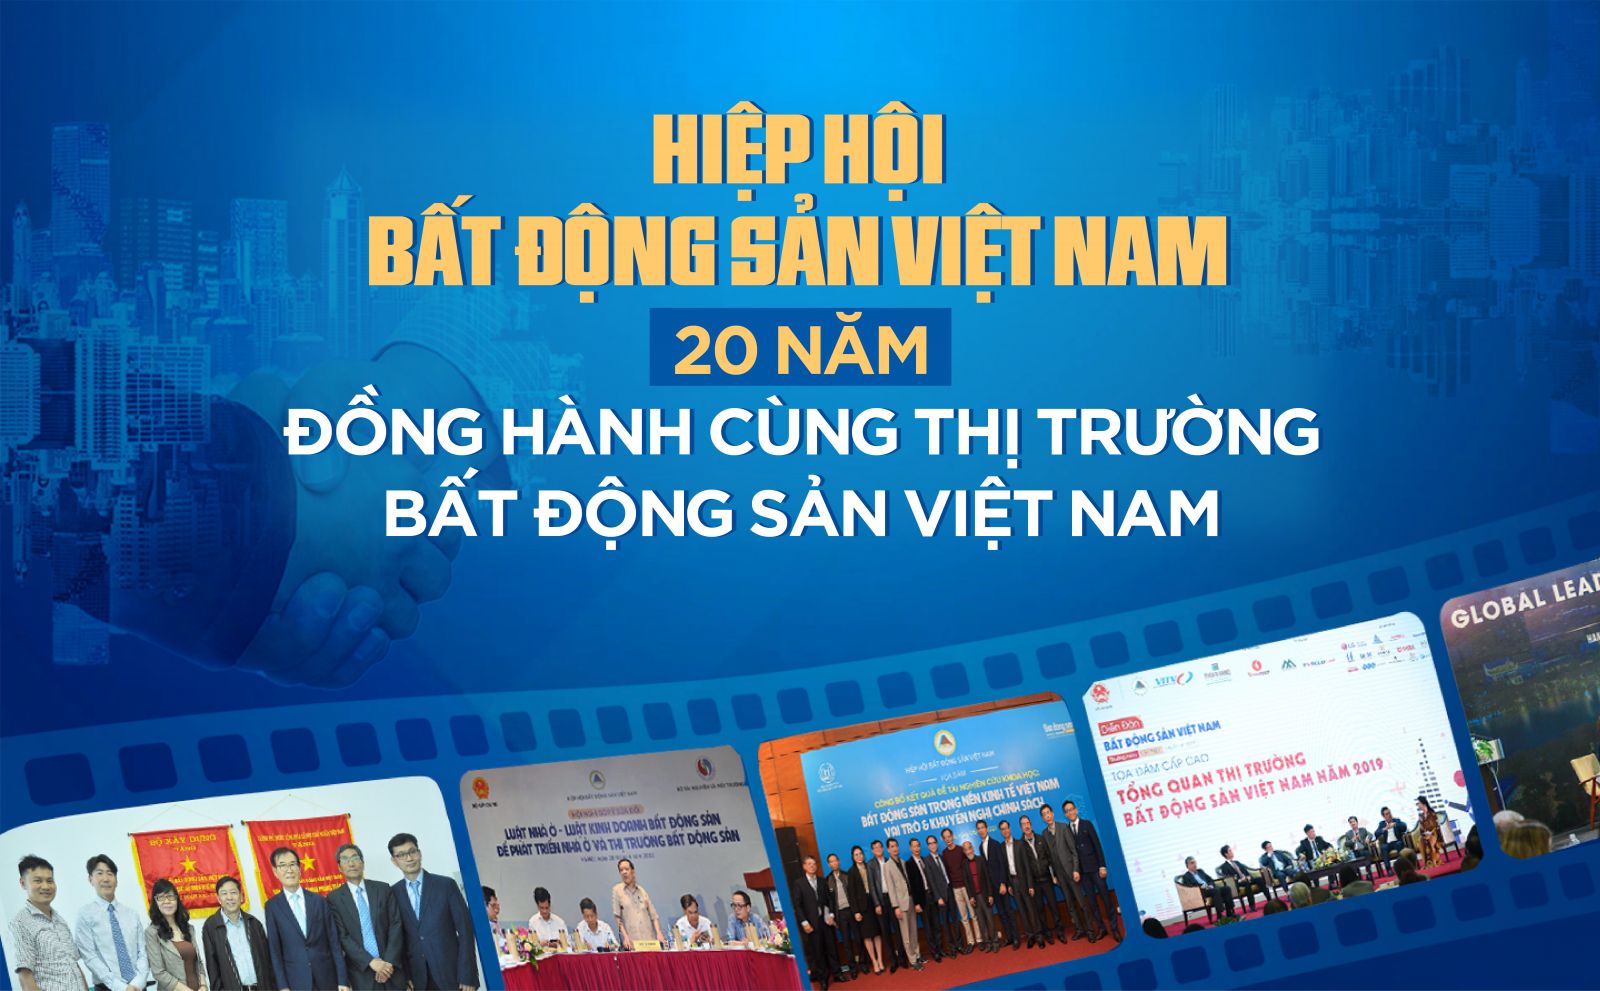 Hiệp hội Bất động sản Việt Nam - 20 năm đồng hành cùng thị trường bất động sản Việt Nam